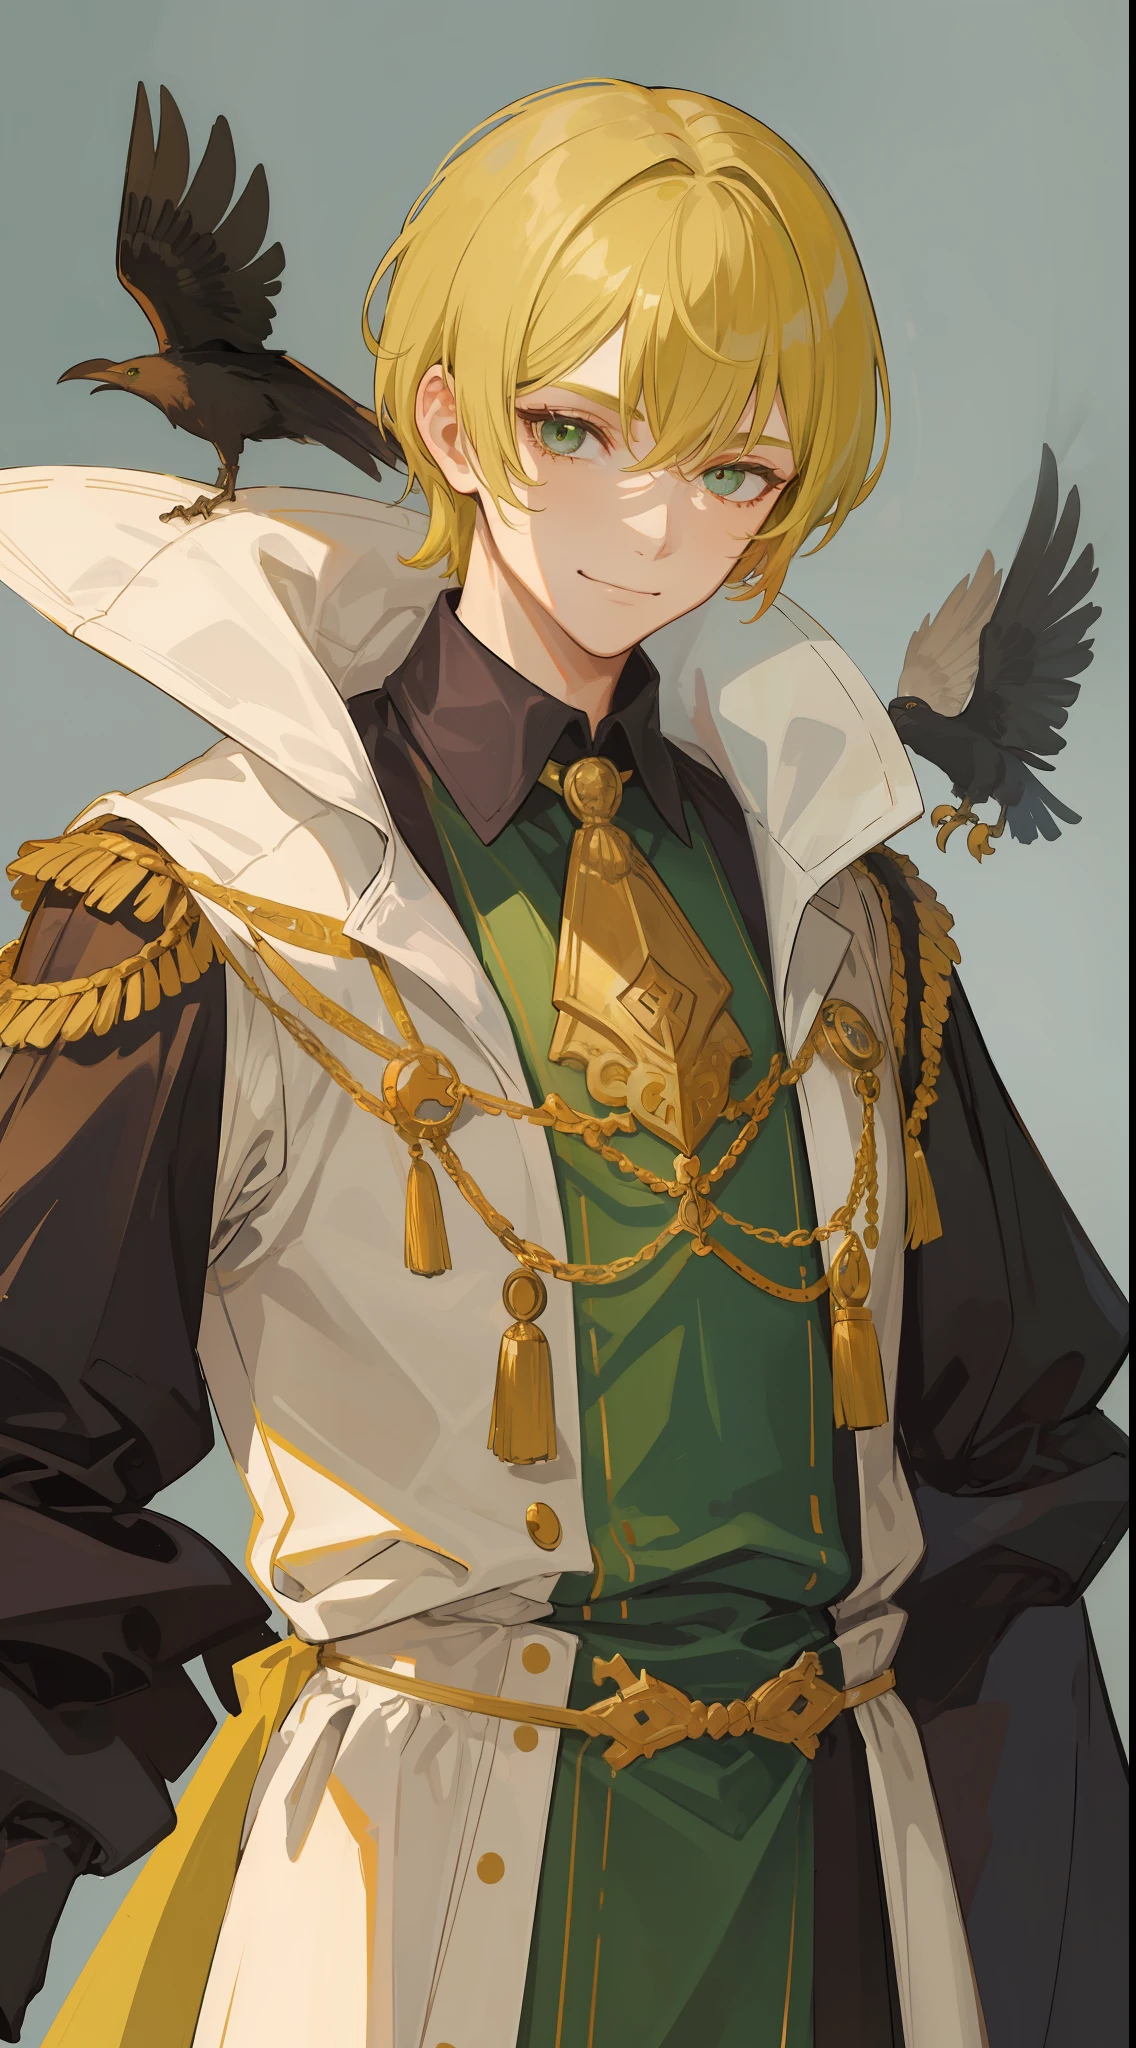 1Homem misterioso, olhos verdes, cabelo curto amarelo claro e ele usava roupas de rei decoradas com penas de corvo no pescoço, ele é o imperador ((Rosto de 41 anos)) ((Rosto sorridente)